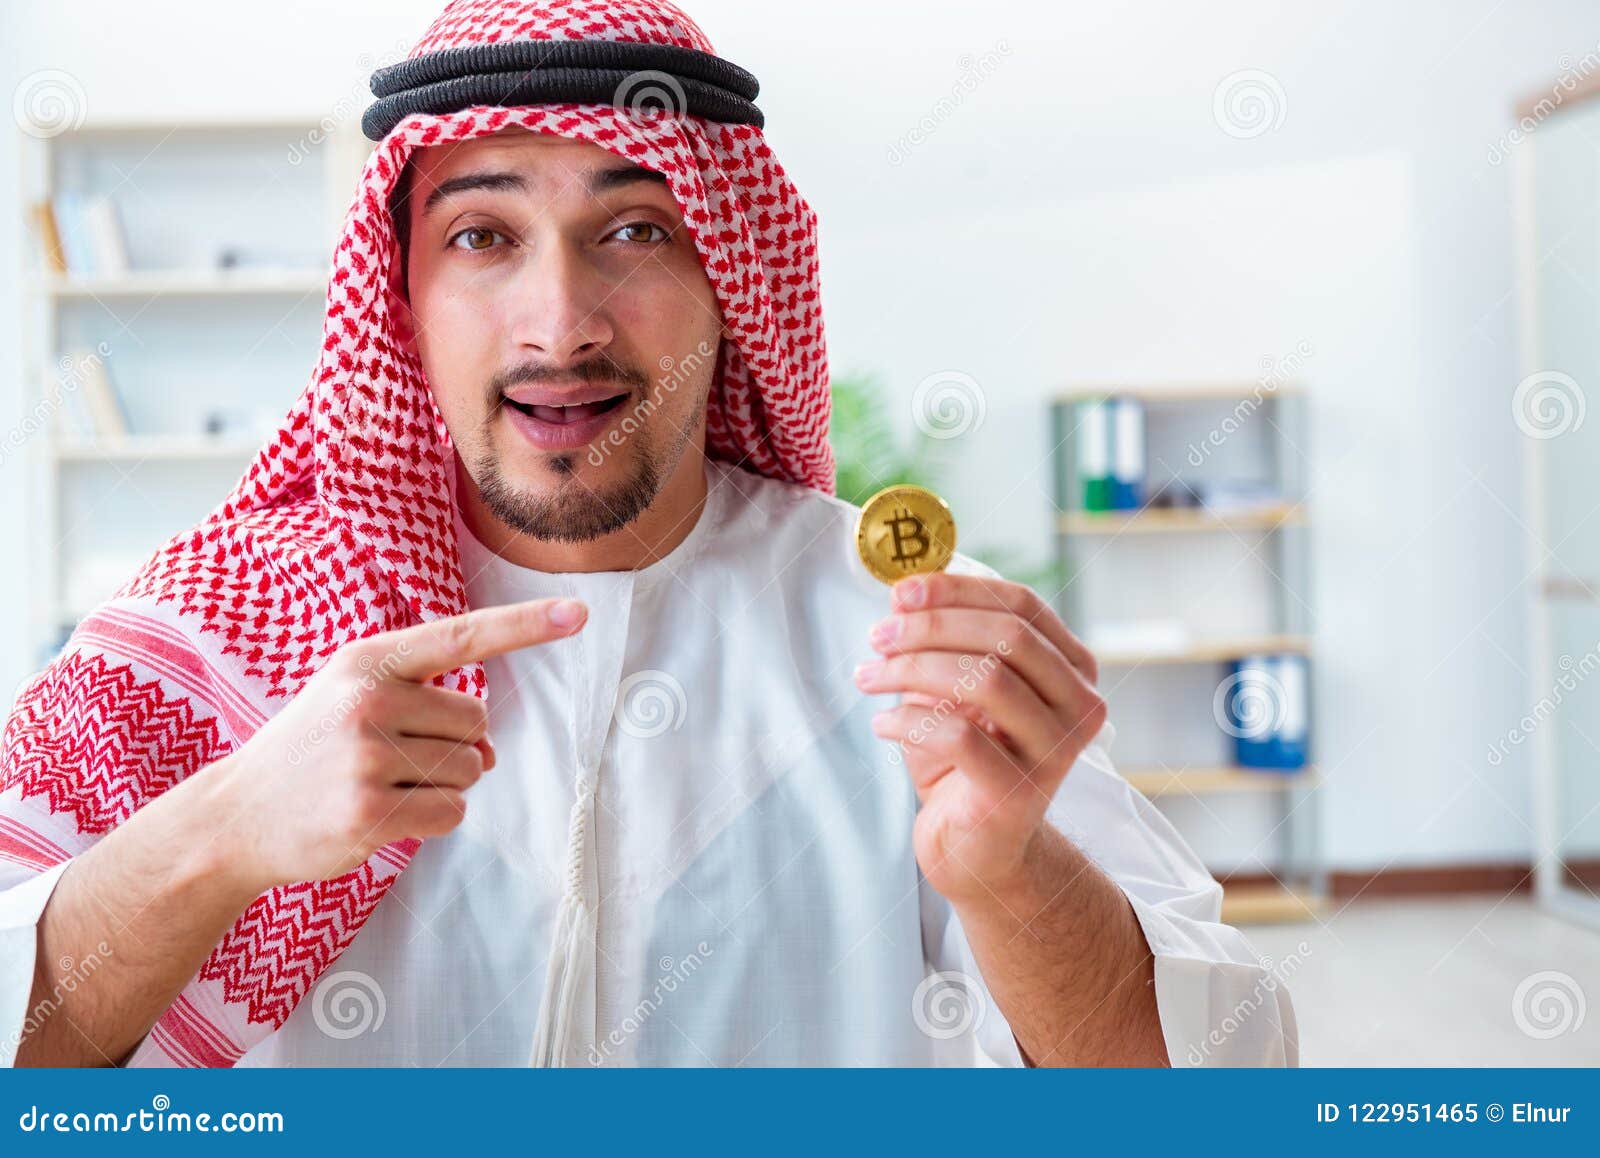 bitcoinul arab